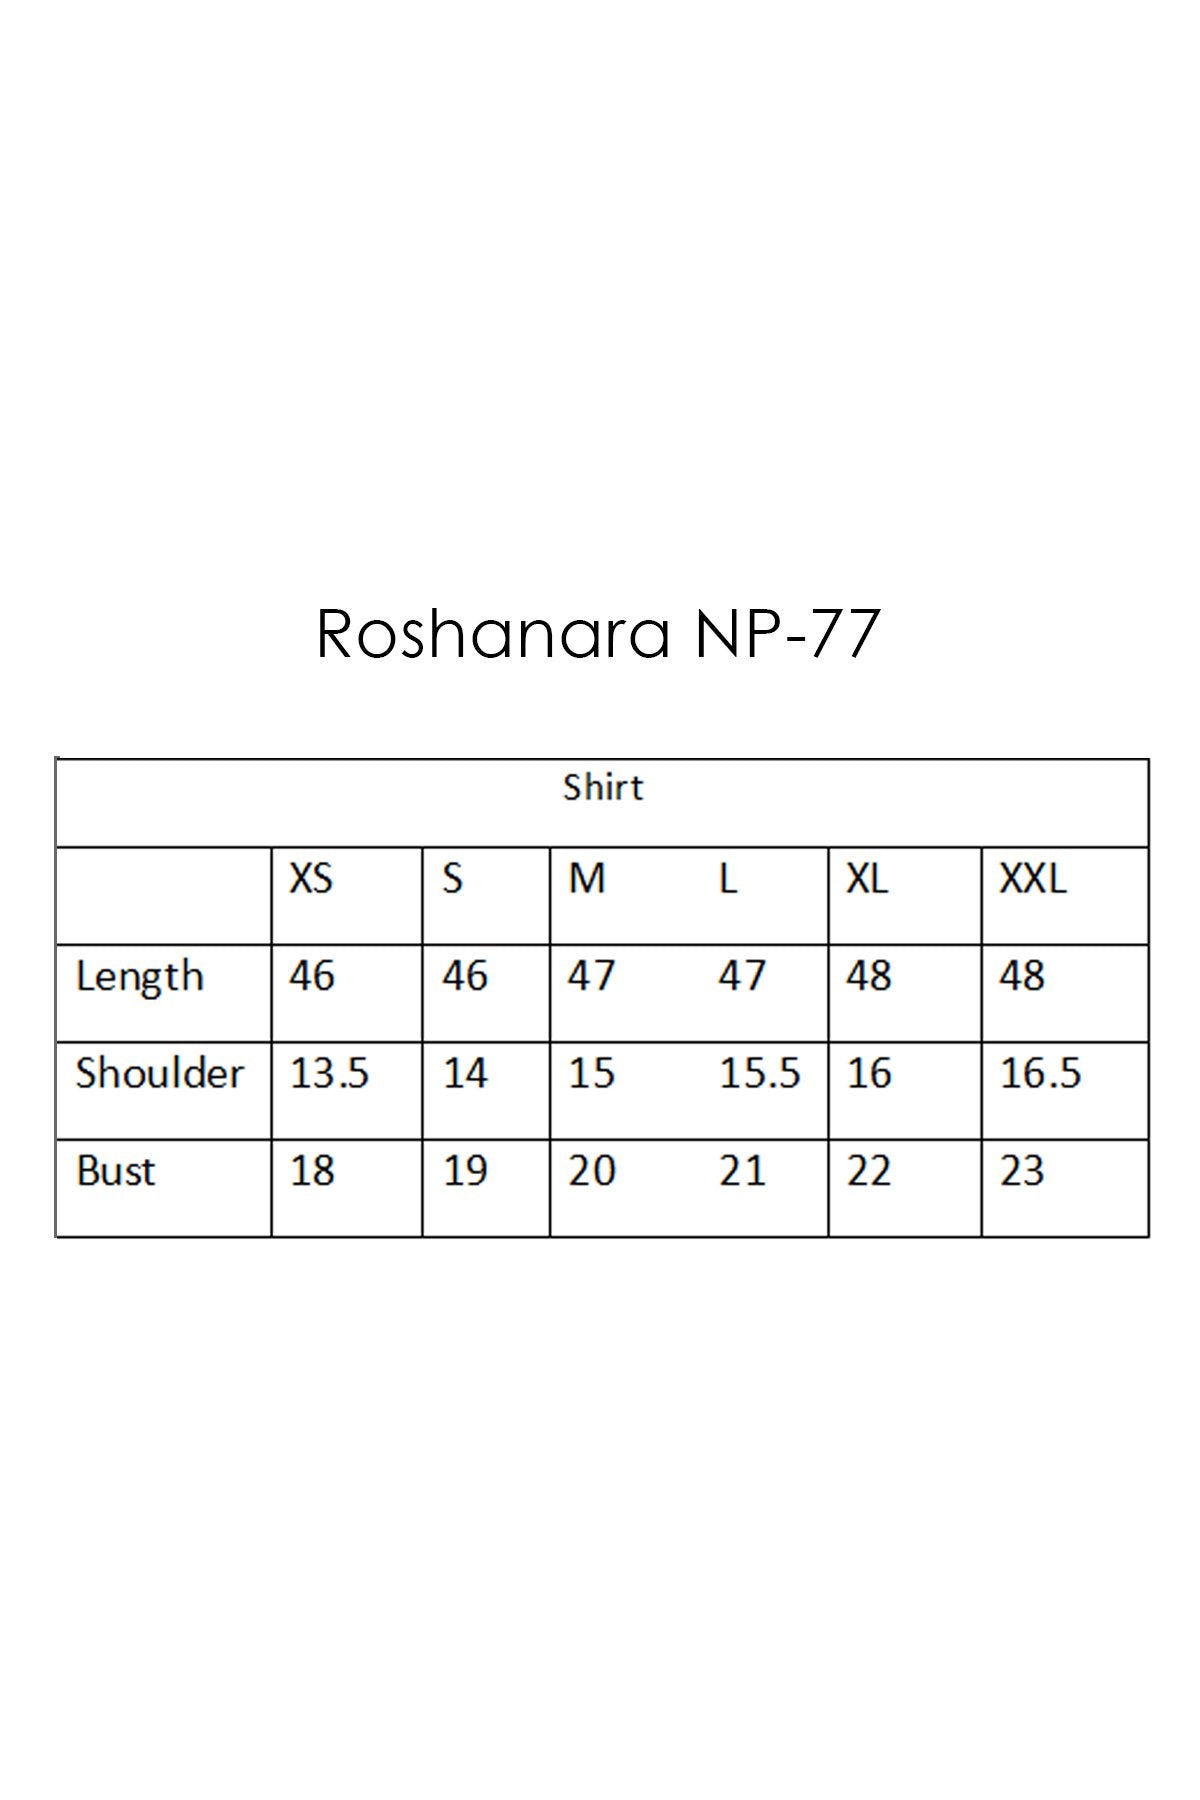 NP-77 Roshanara (6587141750920)